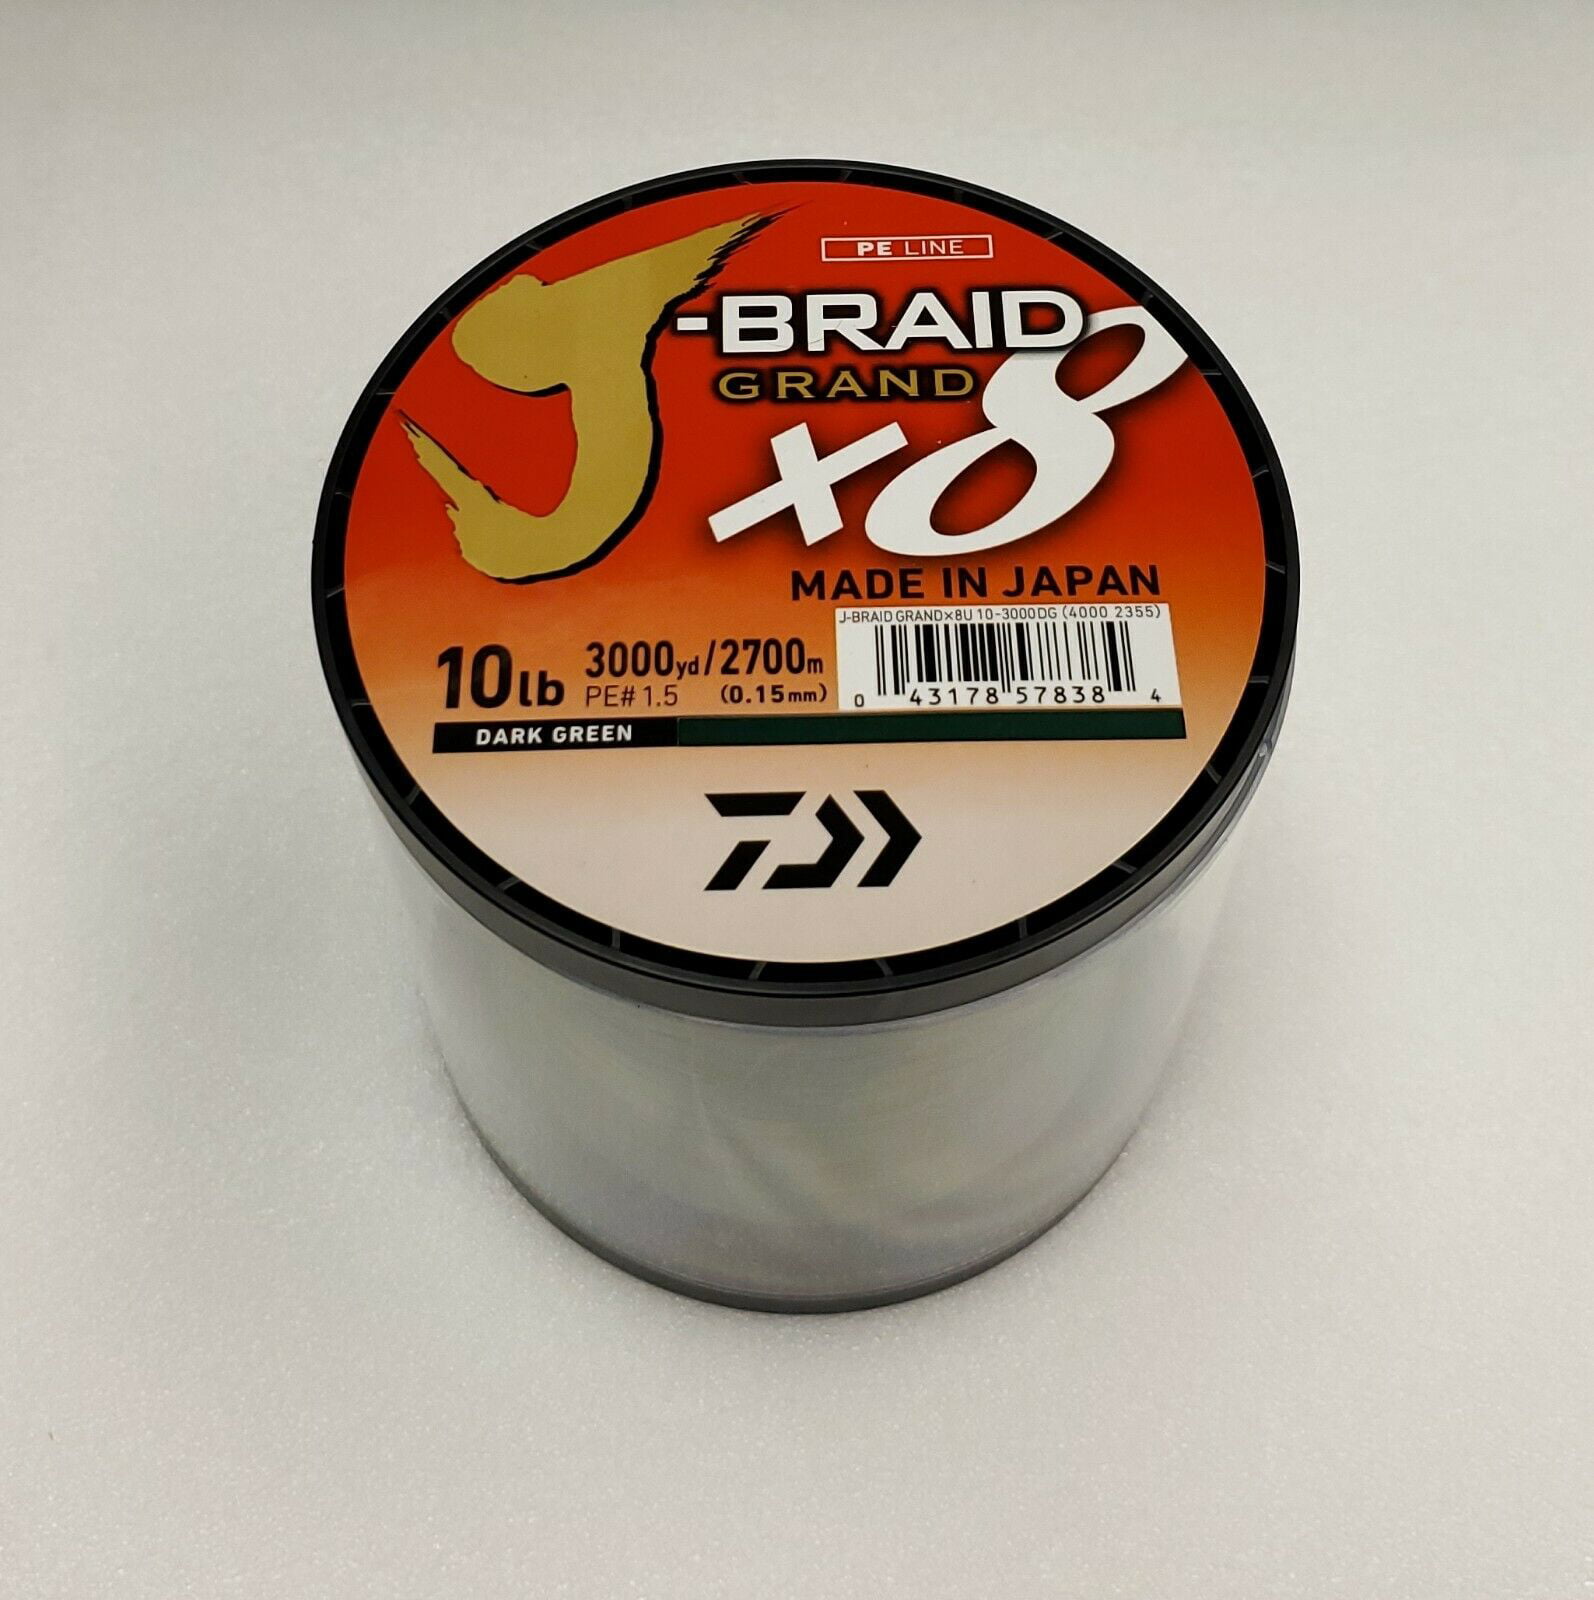 Daiwa J-Braid x8 GRAND Braided Line DARK GREEN 10lb, 3000yd - JBGD8U10